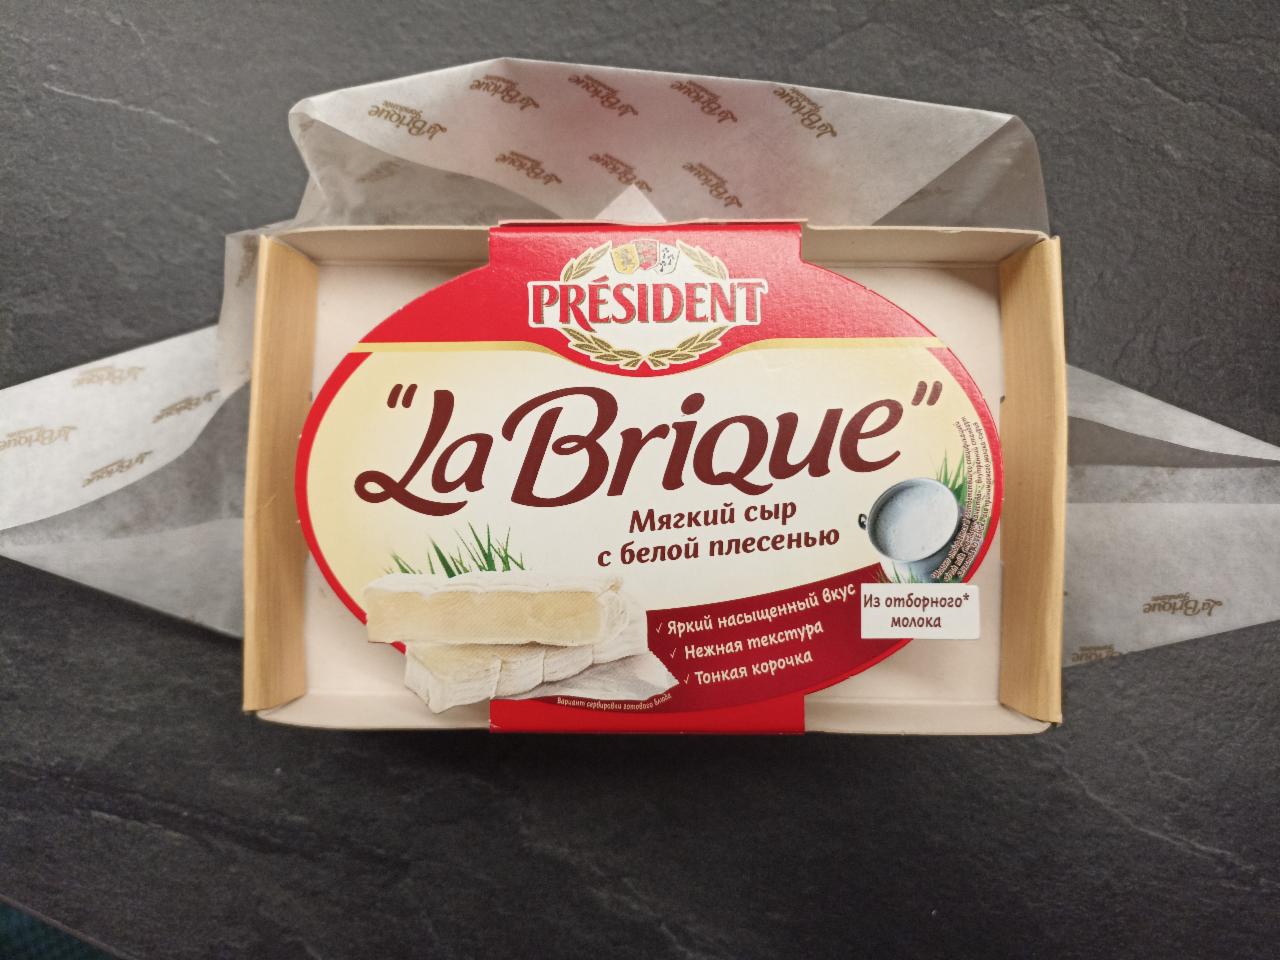 Фото - сыр мягкий с белой плесенью la brique President